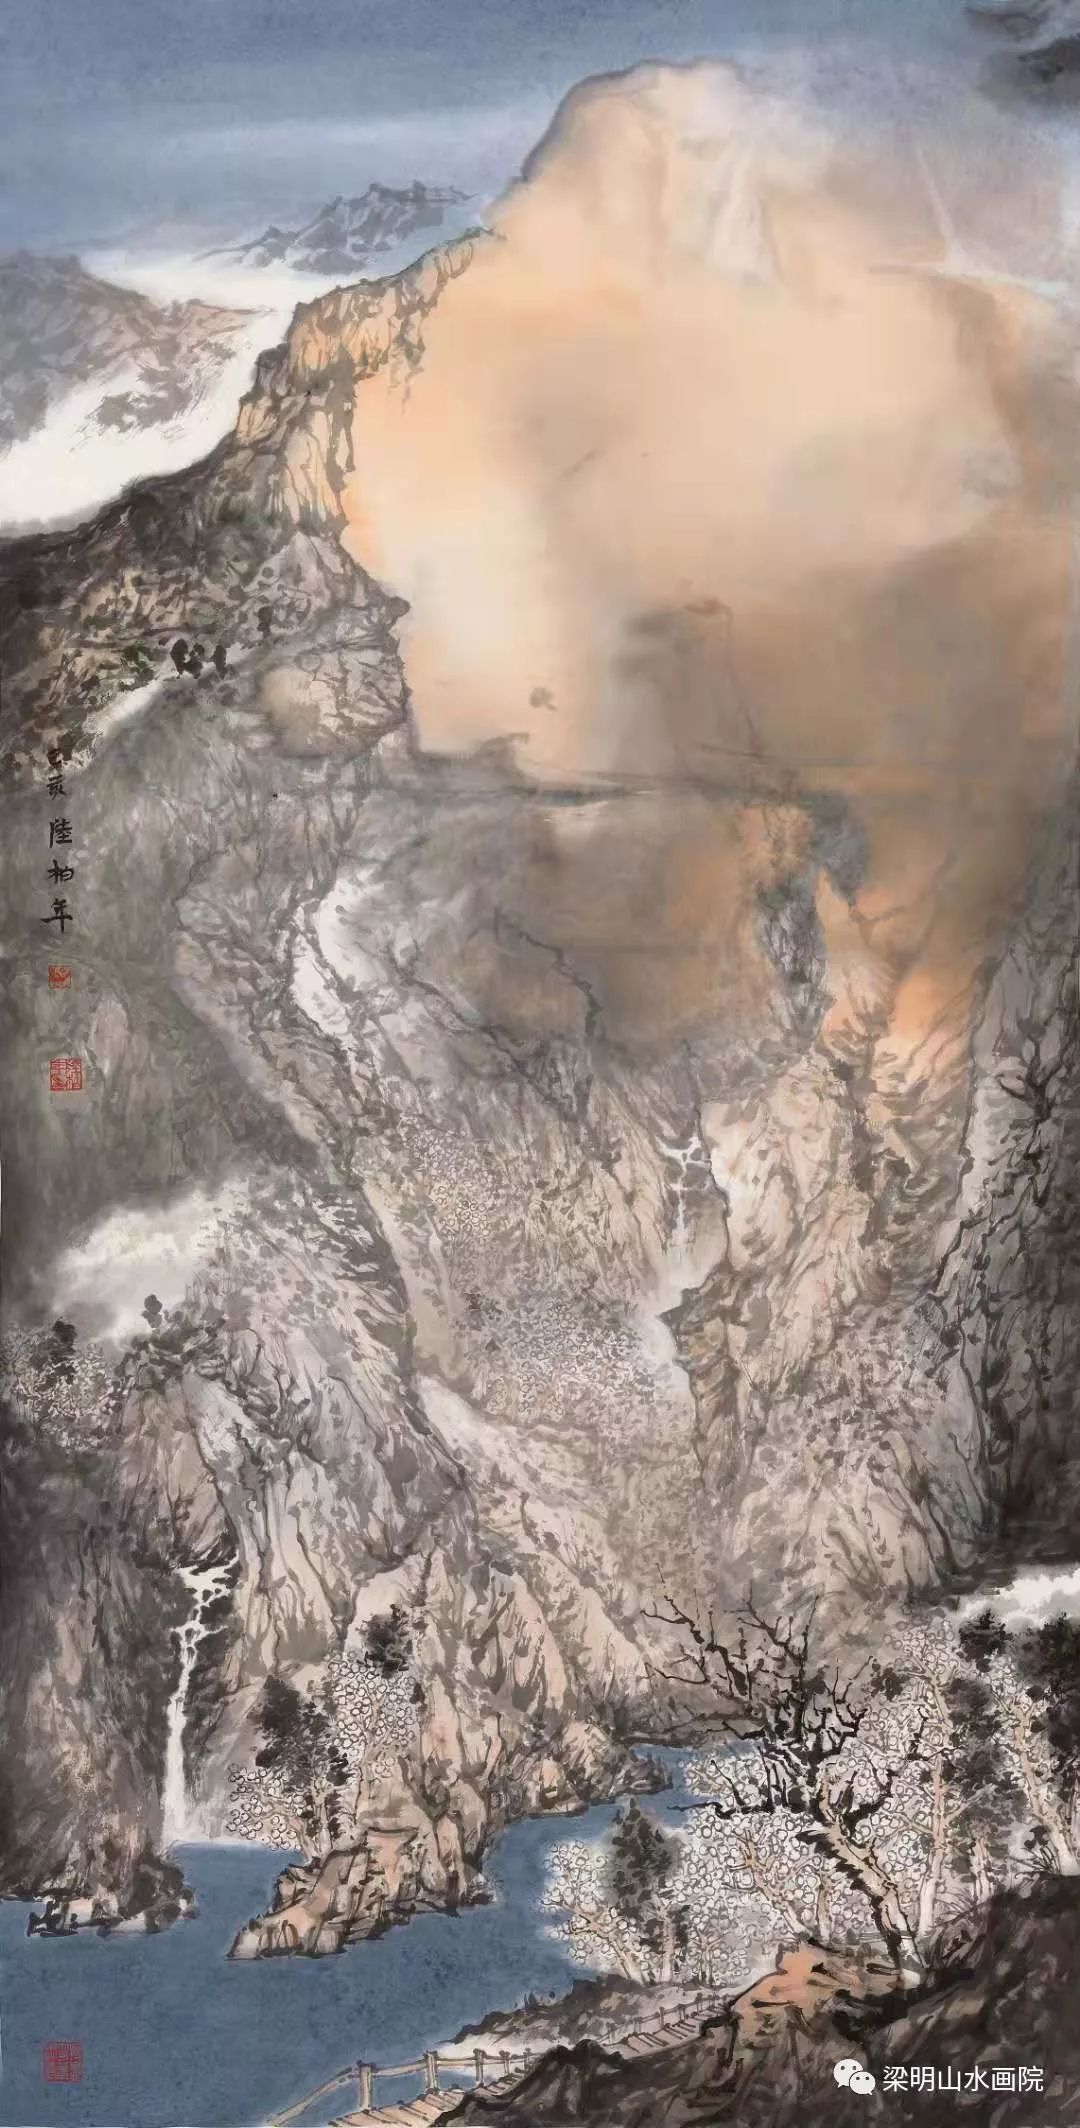 浔阳遗韵，陈兆梁, 2018年布面油画 | 衍艺圈 - topart.cn - 专业的艺术社交电商平台